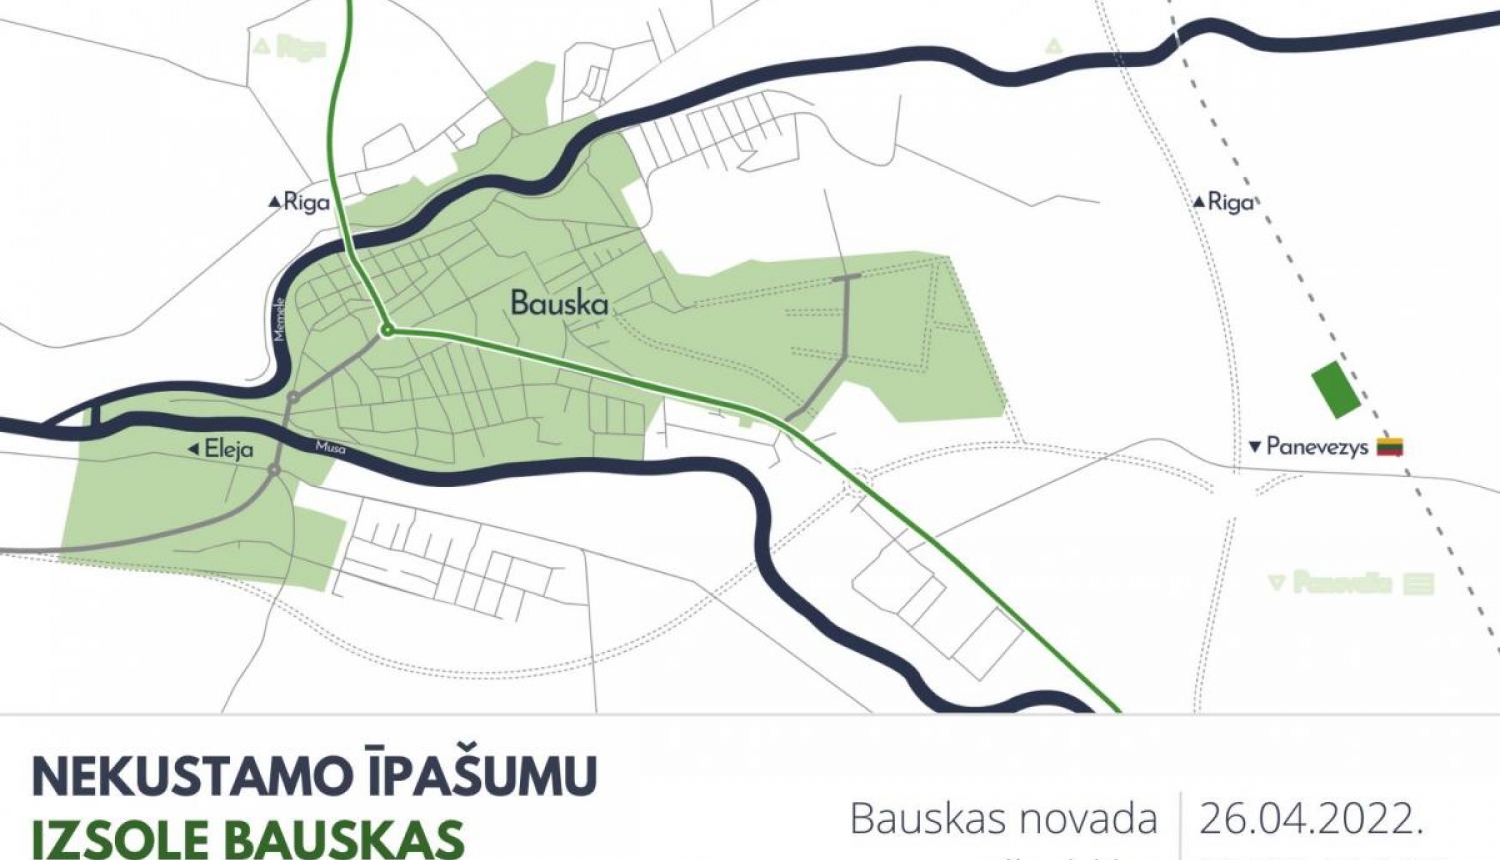 Bauskas novada pašvaldība rīko izsoli nekustamajiem īpašumiem industriālajā teritorijā